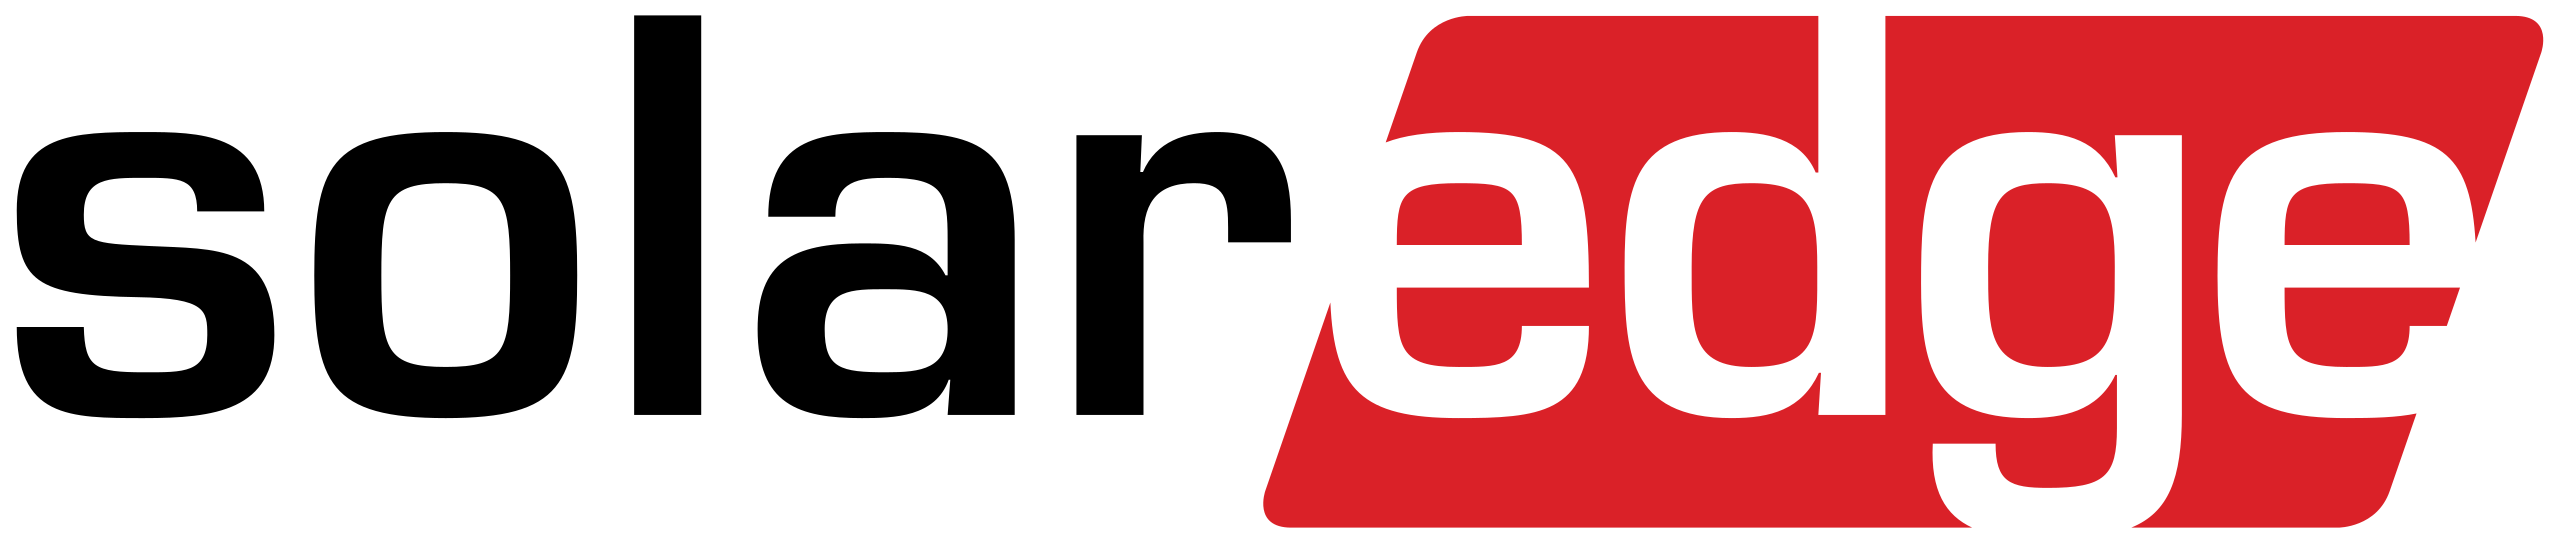 2560px-SolarEdge_logo.svg (1)